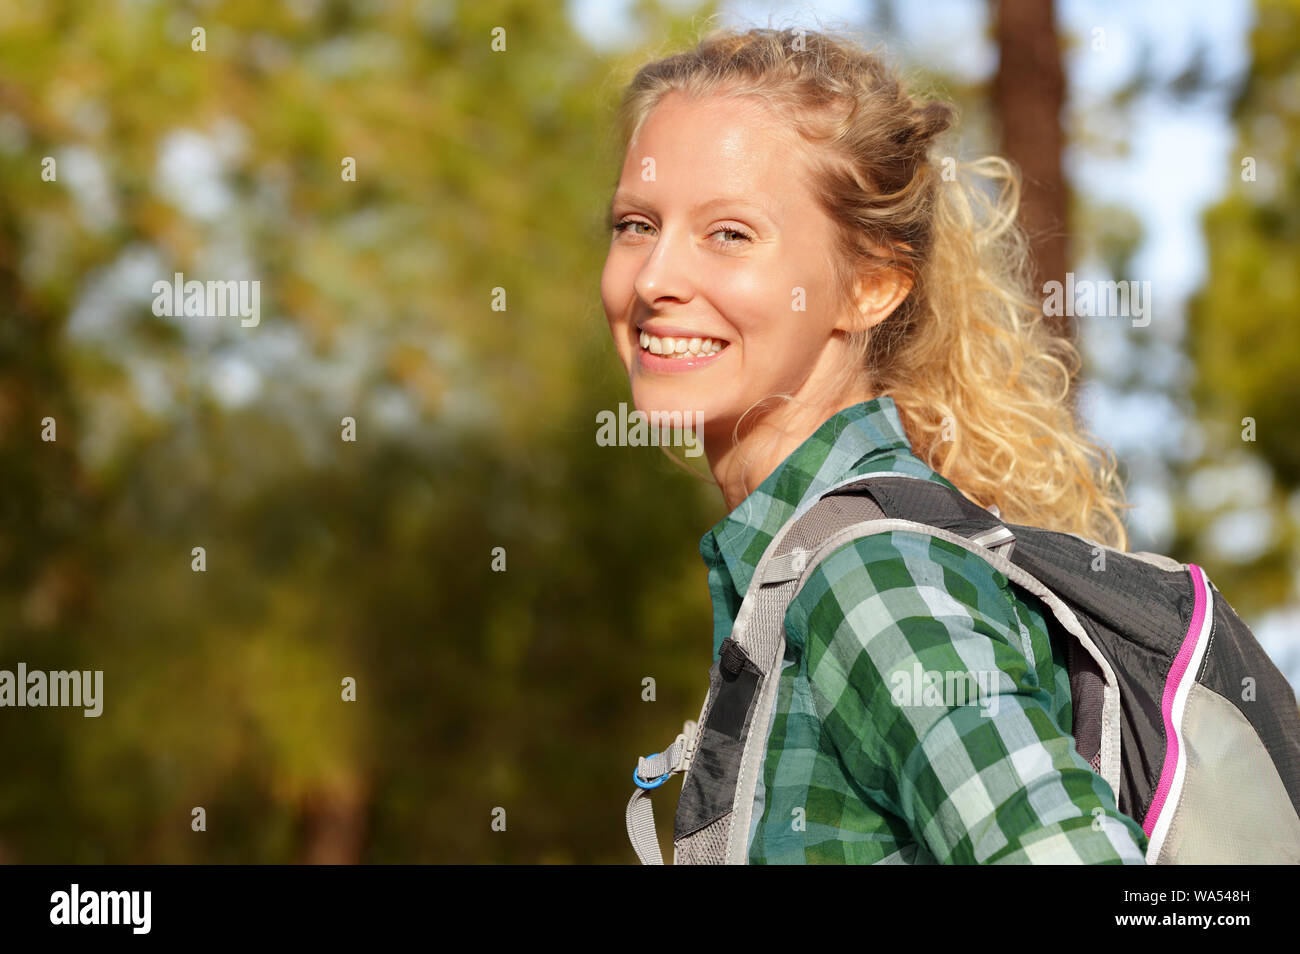 Wandern Frau Porträt Lächeln glücklich im Wald. Weibliche Wanderer Mädchen Trekking Rucksack tragen außerhalb der suche ehrliche und frische an der Kamera. Schöne junge blonde Mädchen, gesunden Lebensstil. Stockfoto